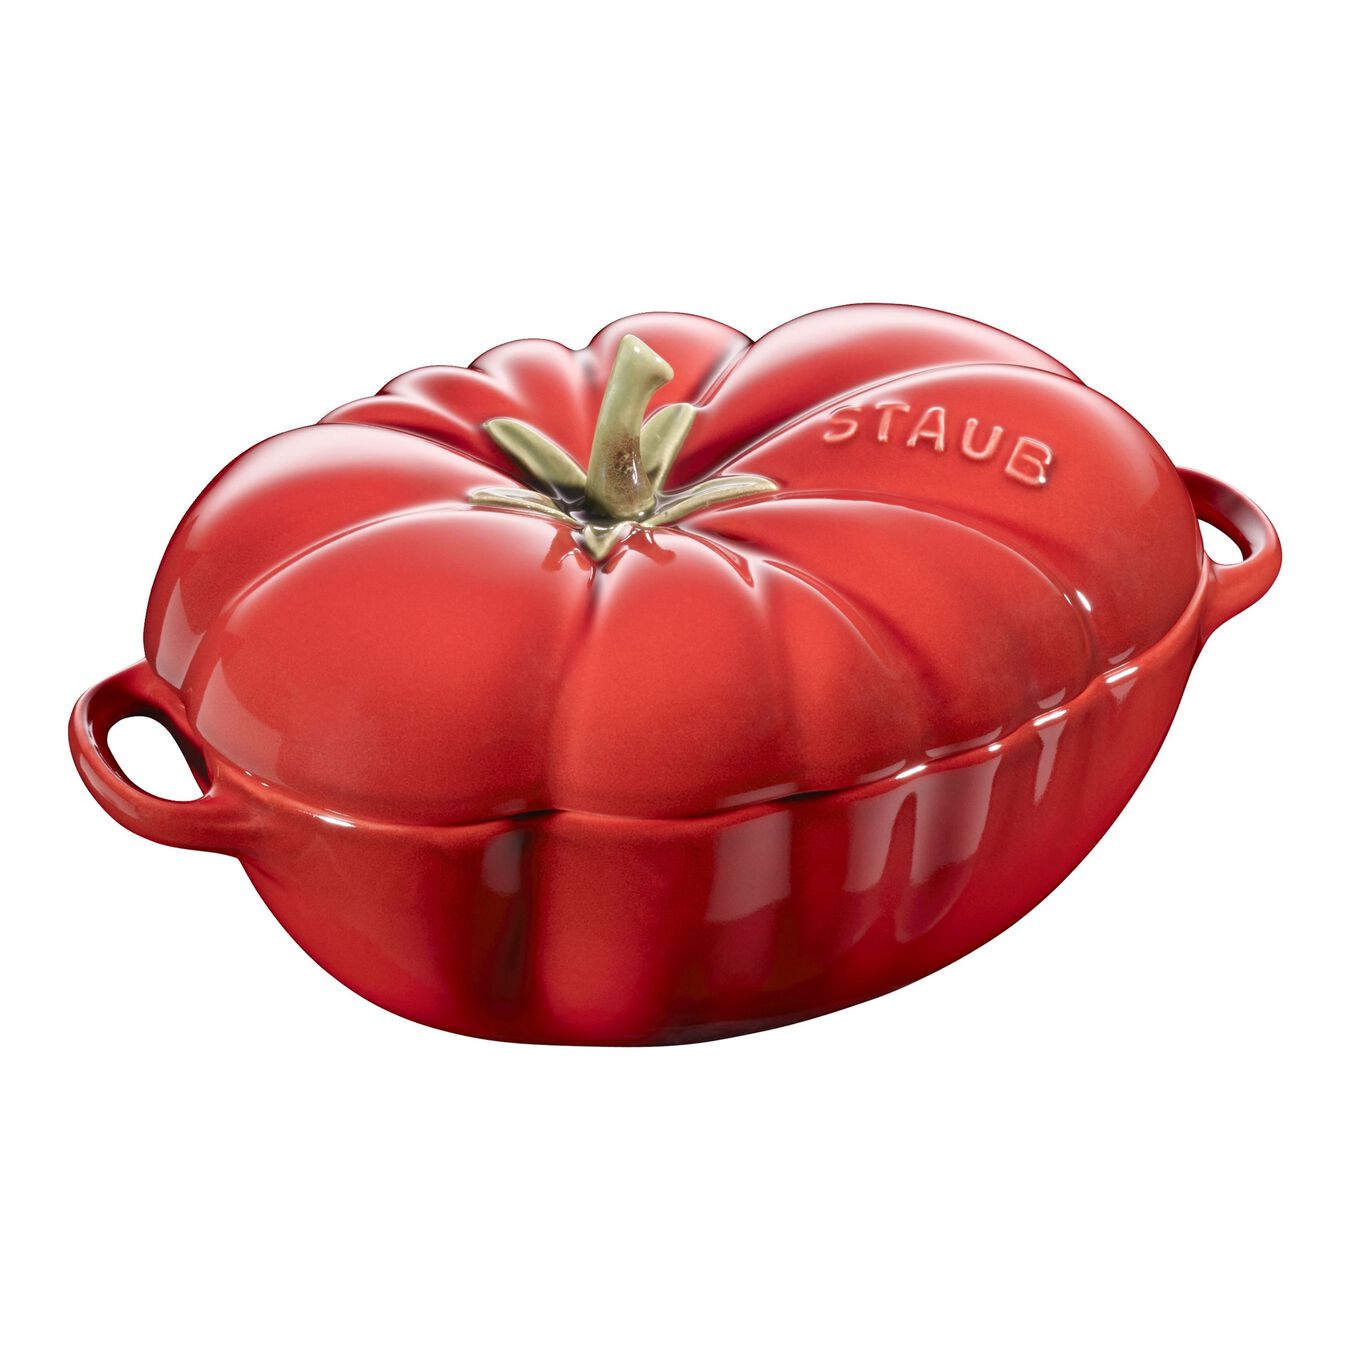 Cocotte 16 cm, Tomate, Cerise, Céramique,,large 1